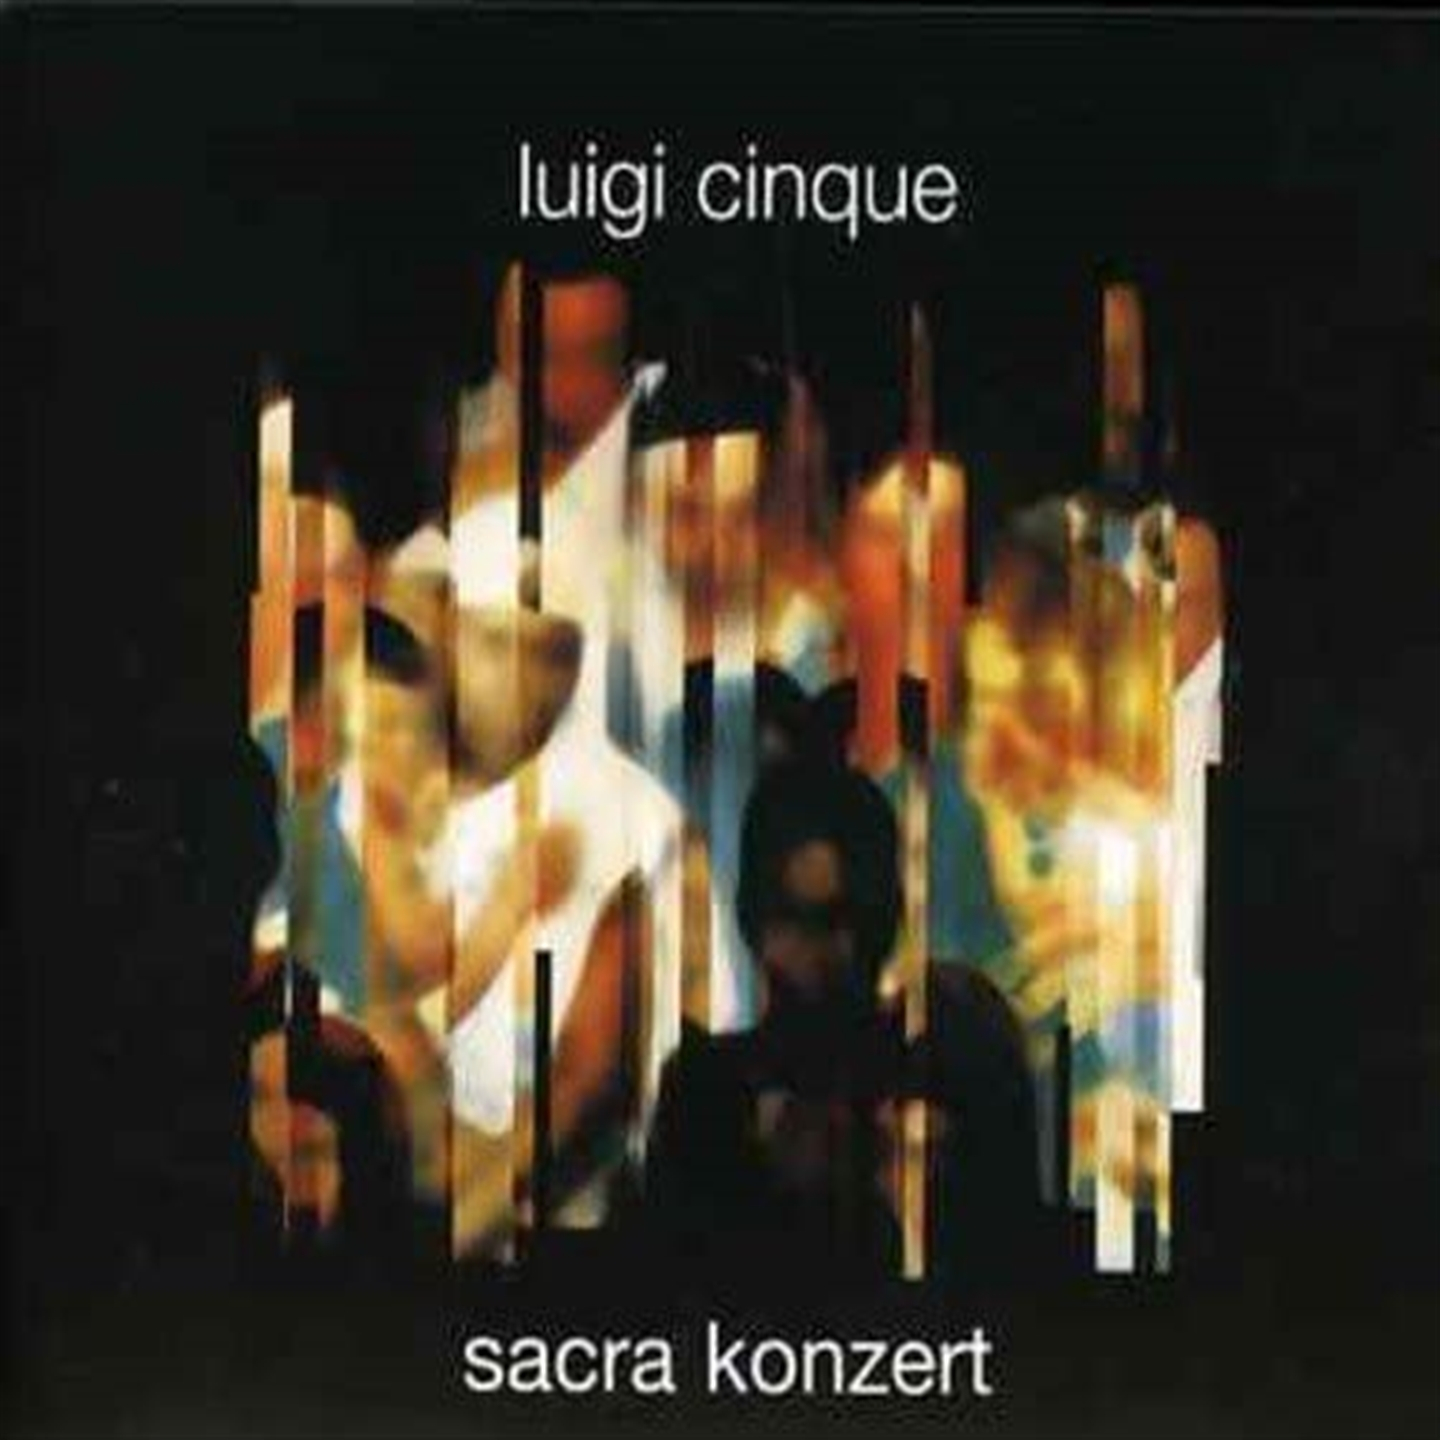 SACRA KONZERT [CD + DVD]